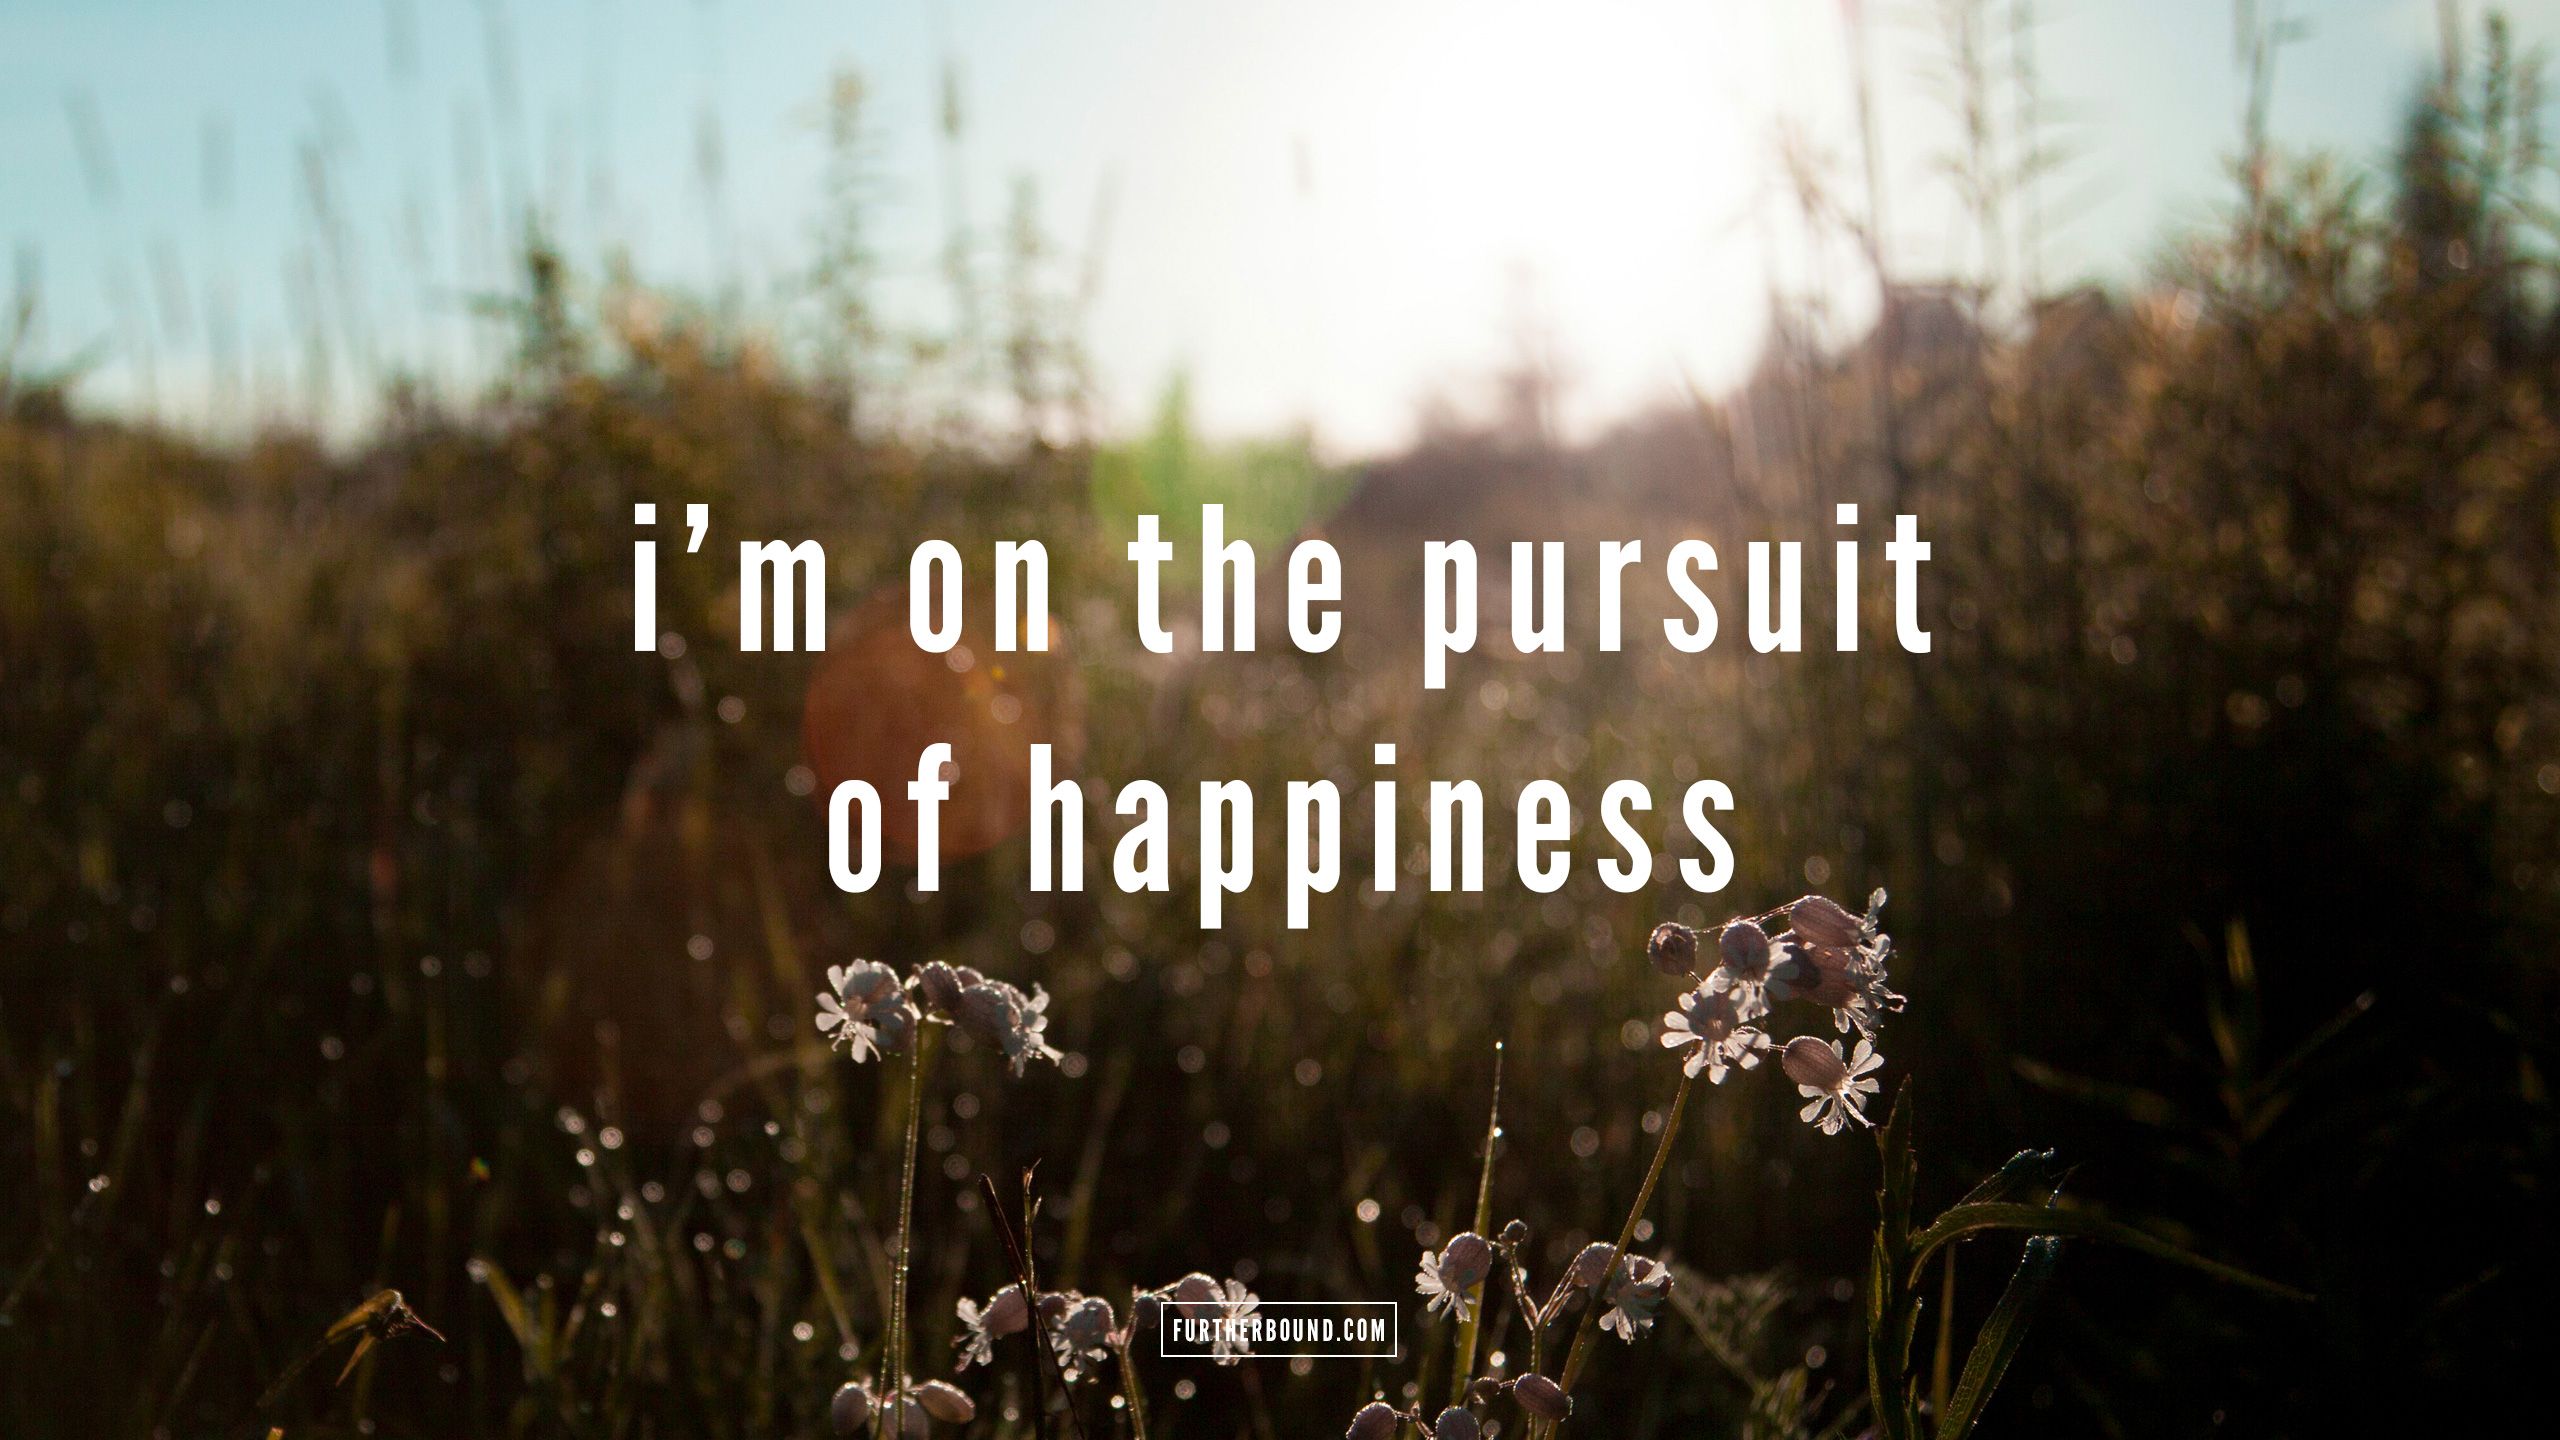 در جستجوی خوشبختی (the pursuit of happyness)